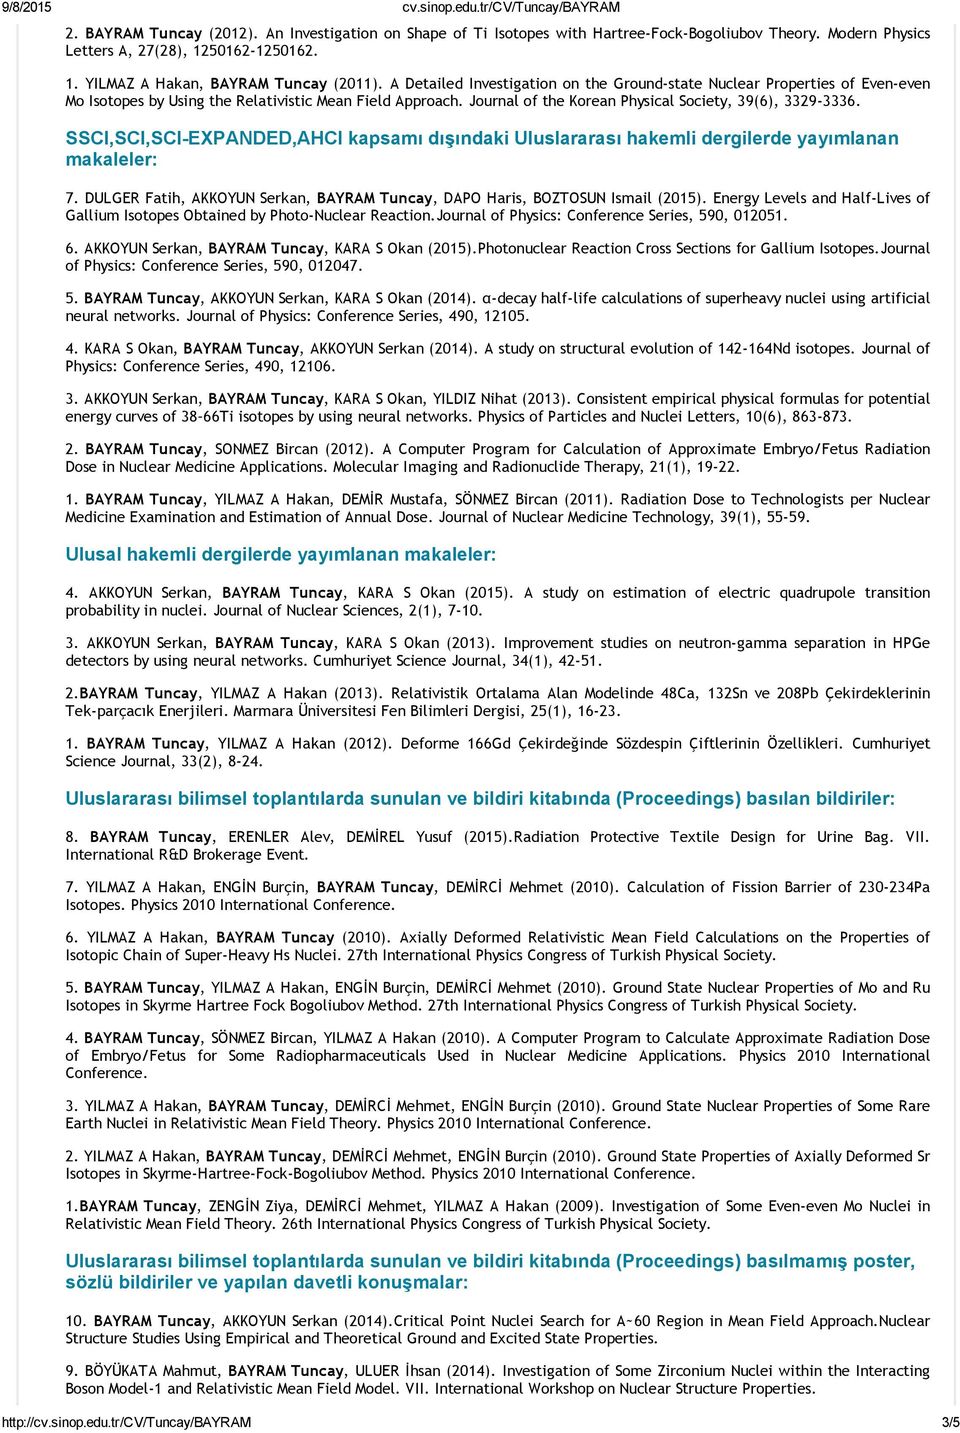 SSCI,SCI,SCI EXPANDED,AHCI kapsamı dışındaki Uluslararası hakemli dergilerde yayımlanan makaleler: 7. DULGER Fatih, AKKOYUN Serkan, BAYRAM Tuncay, DAPO Haris, BOZTOSUN Ismail (2015).